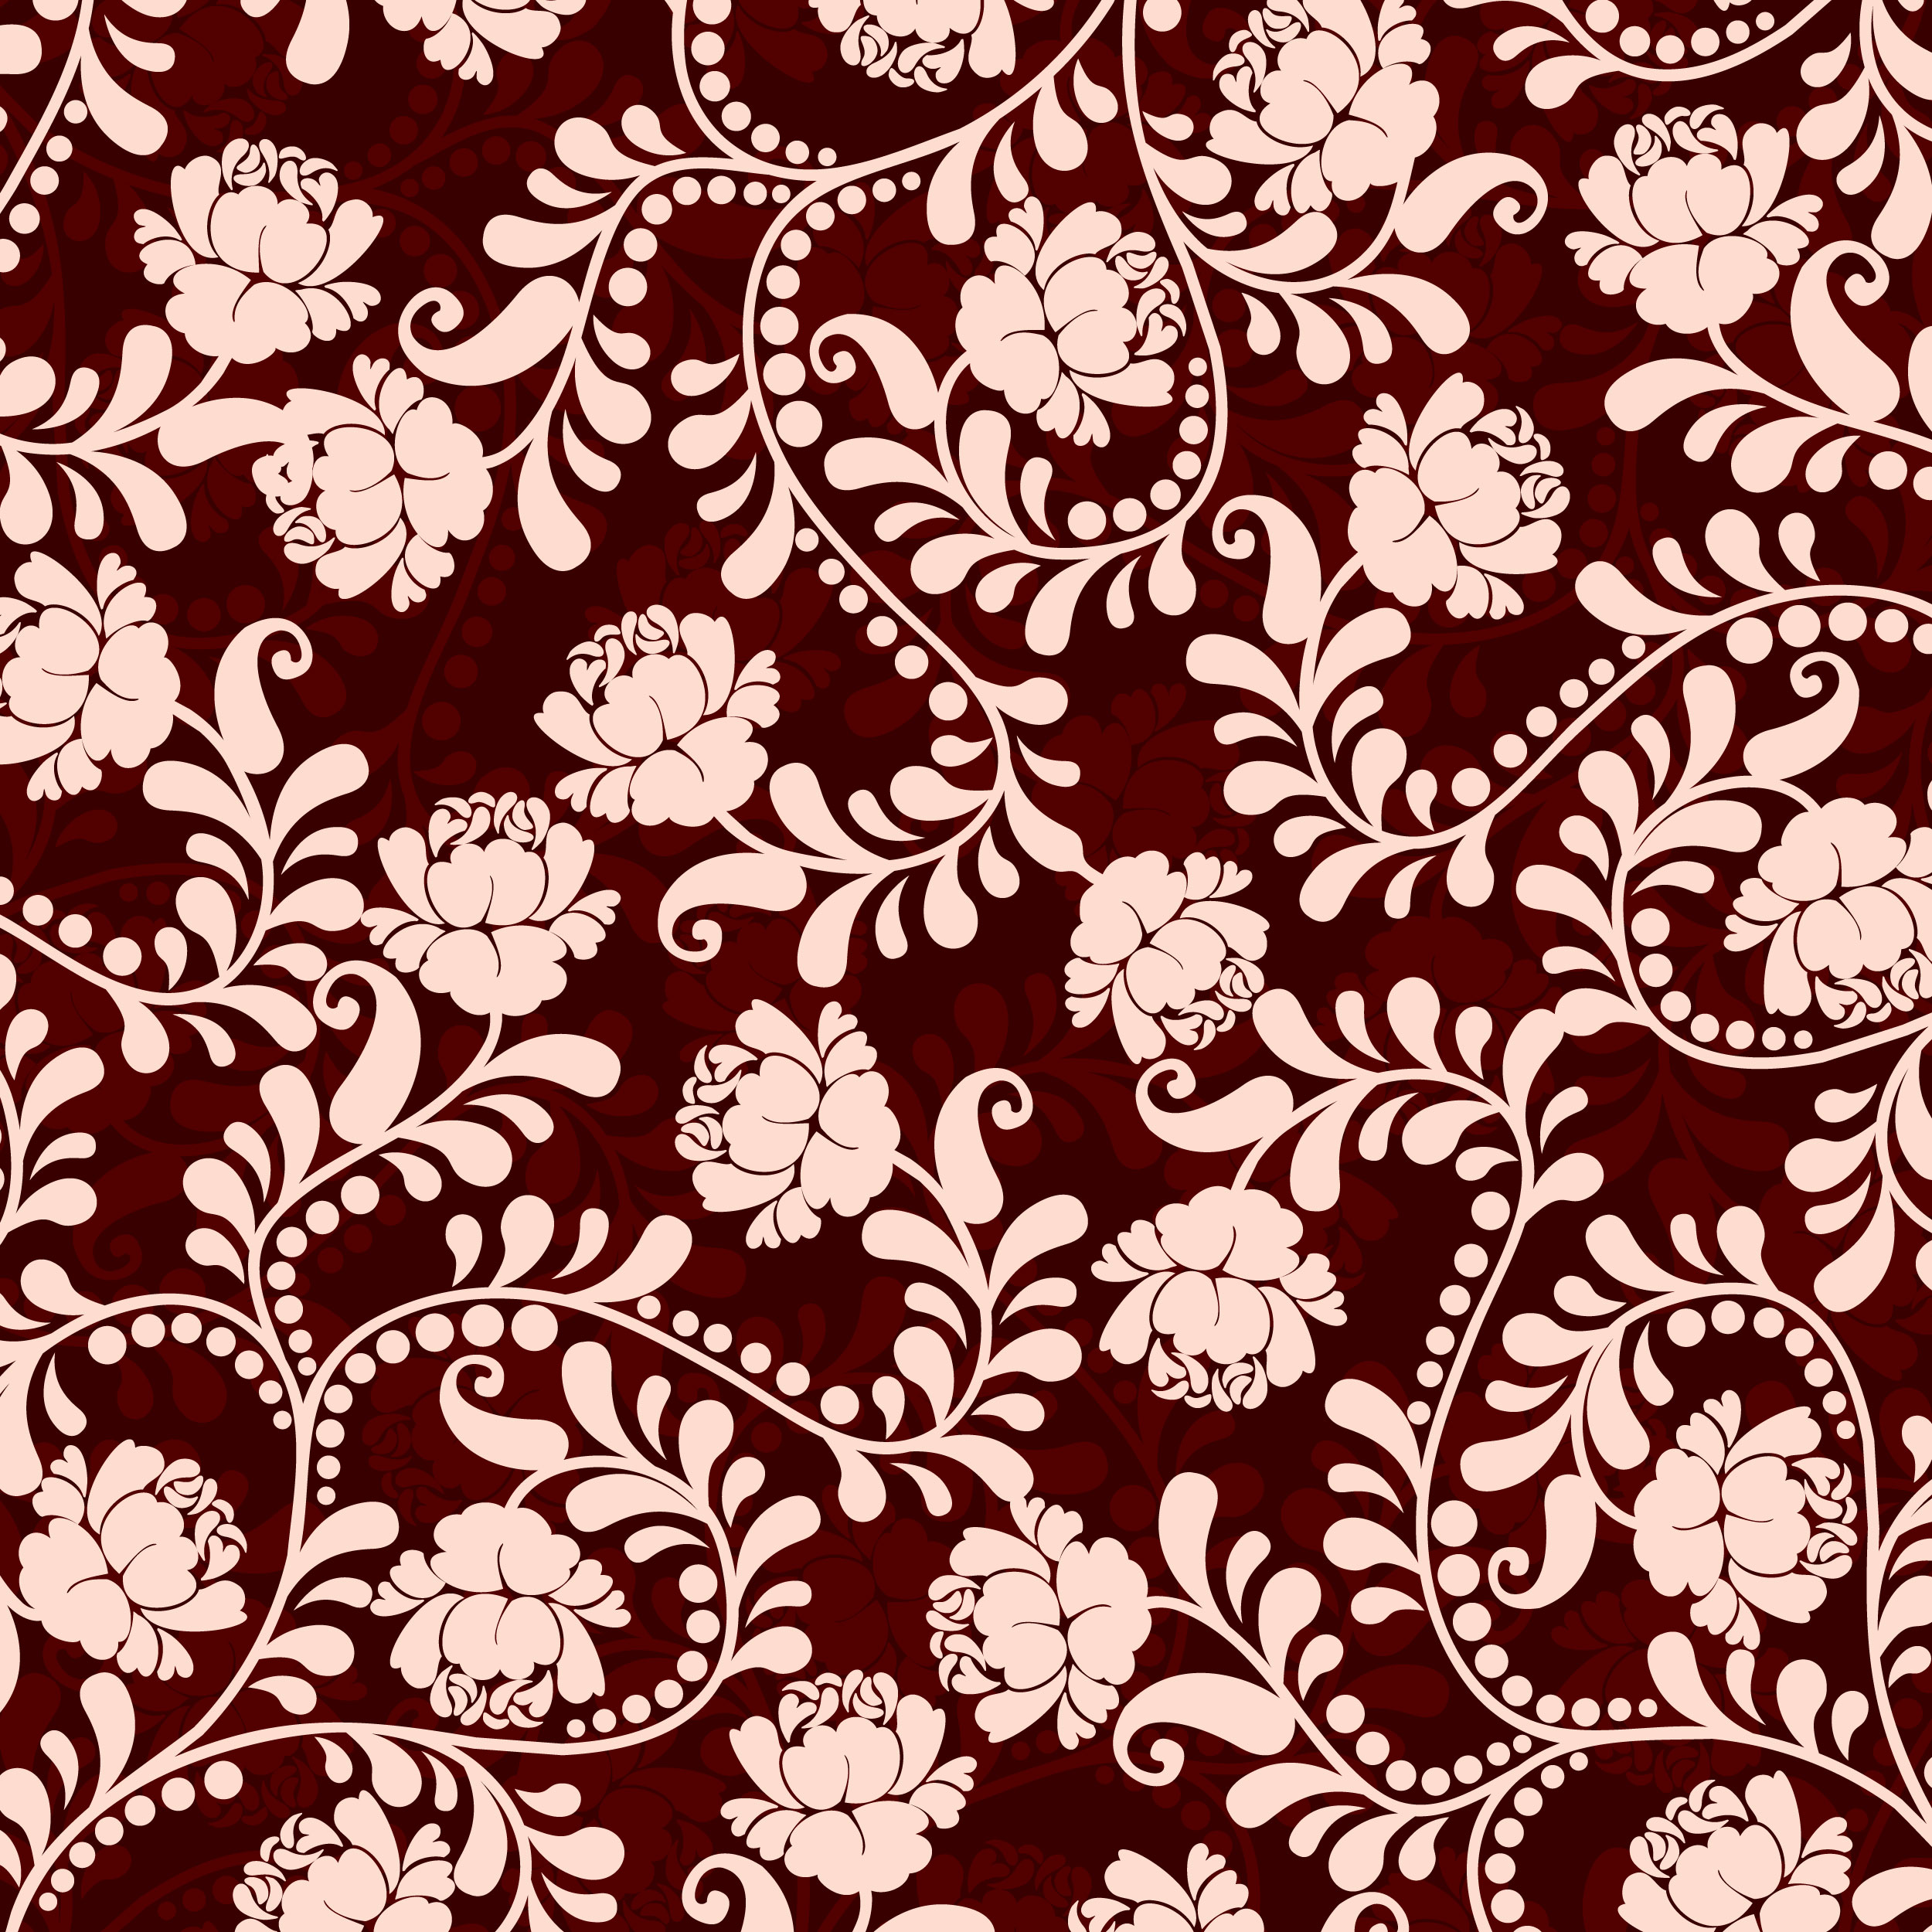 壁紙 背景イラスト 花の模様 柄 パターン No 014 ピンク 茎葉 赤背景